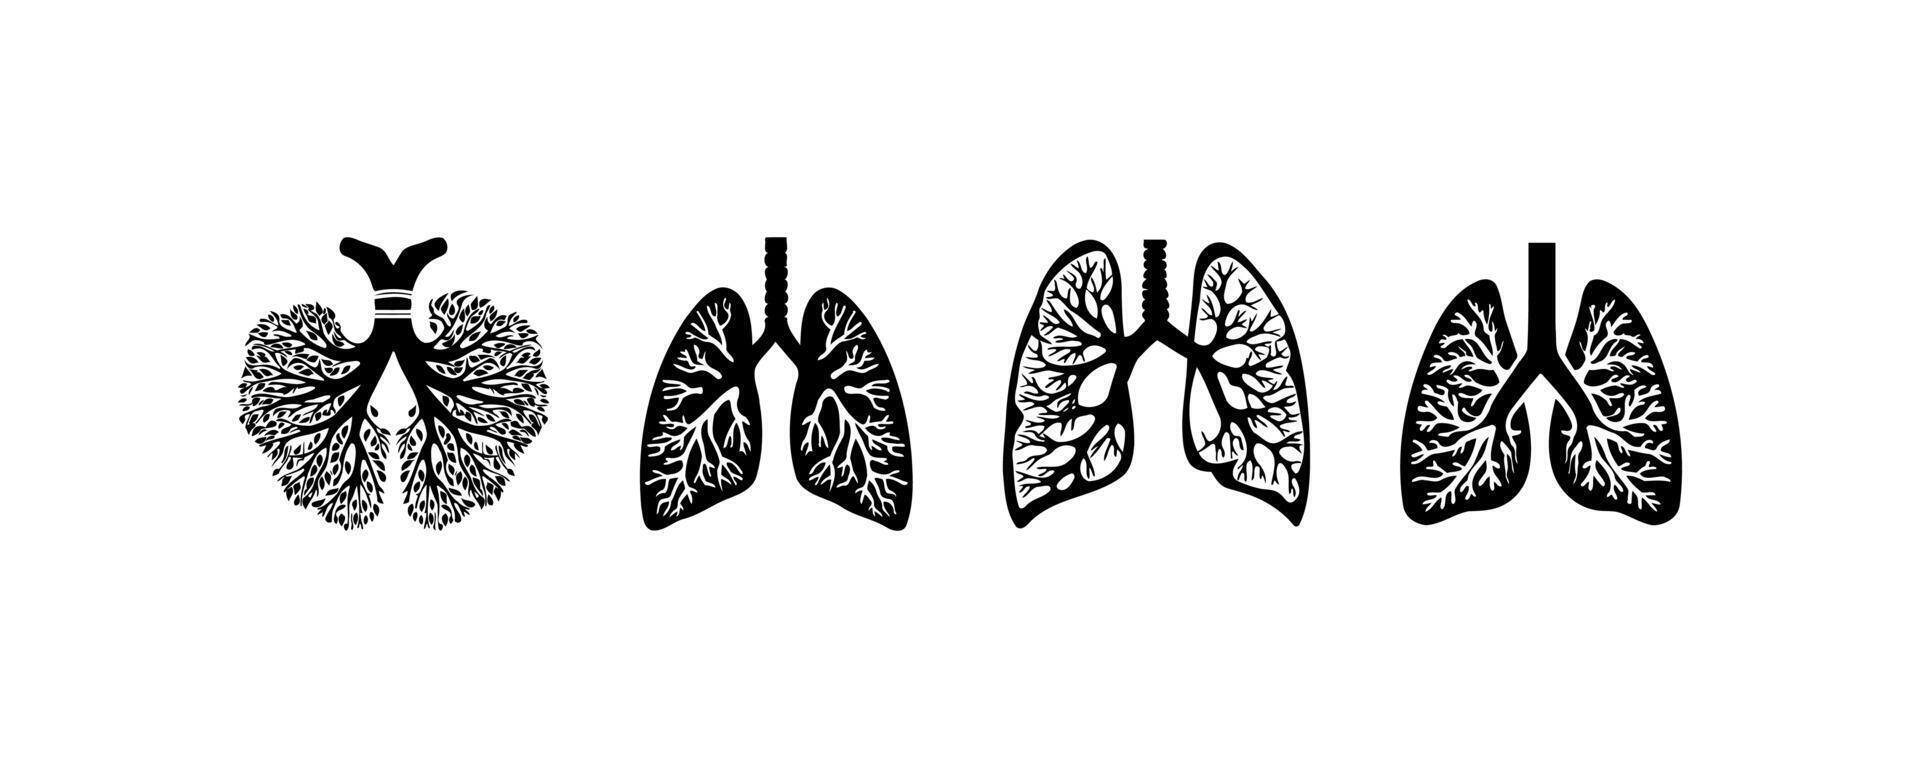 Humain poumons dans le forme de les racines ou branches de une arbre silhouette icône ensemble. vecteur illustration conception.